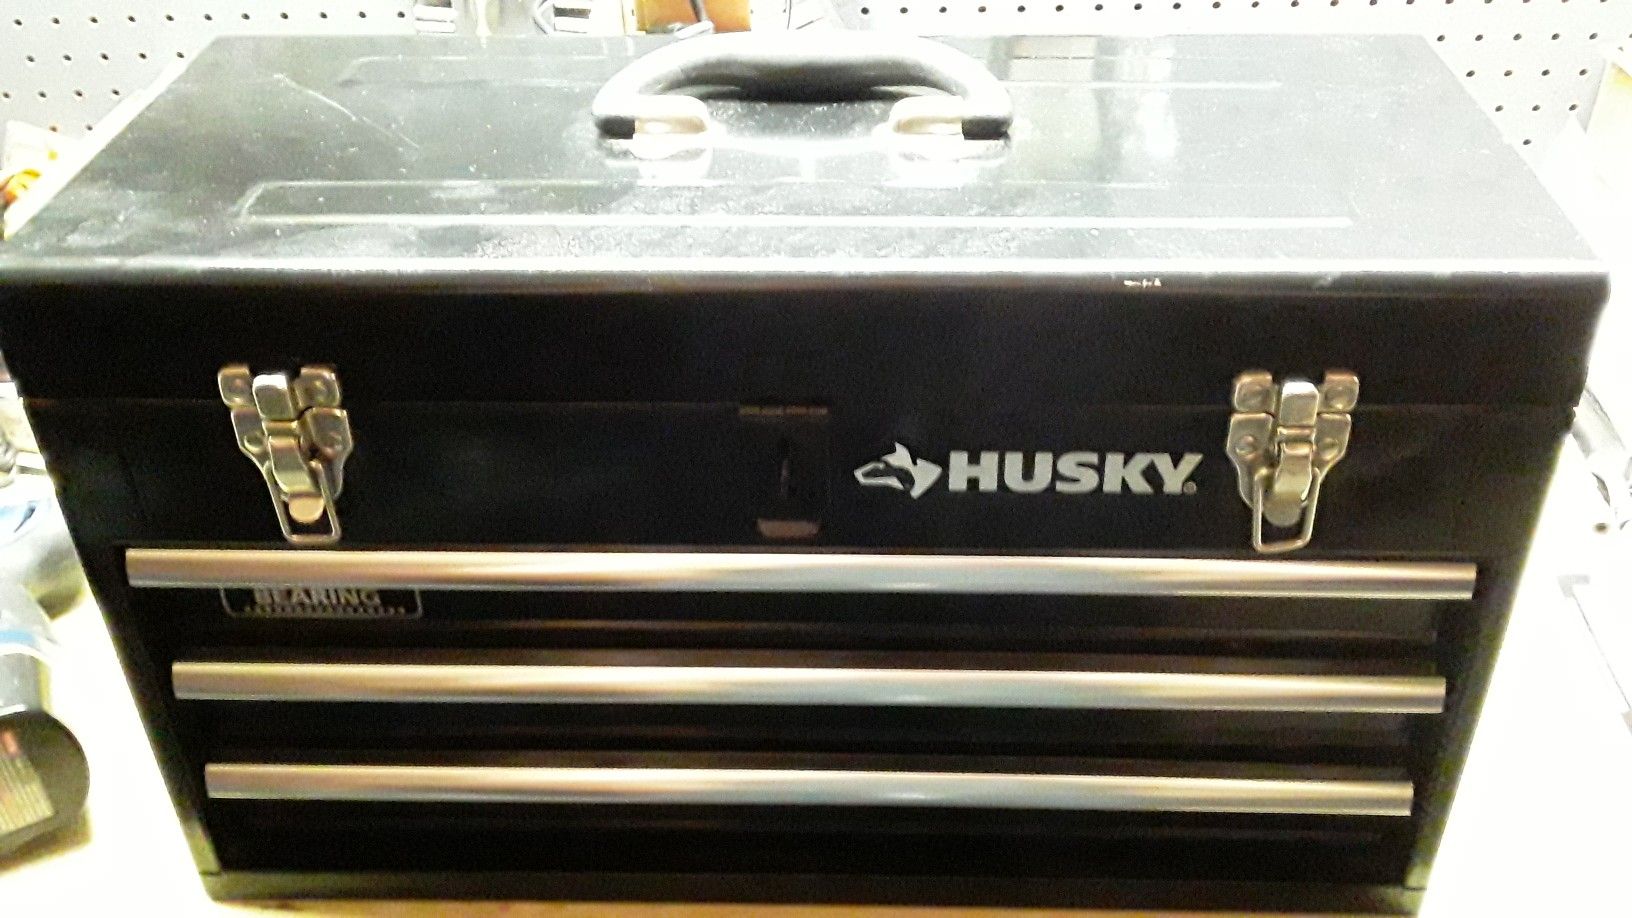 Husky toolbox w/ tools